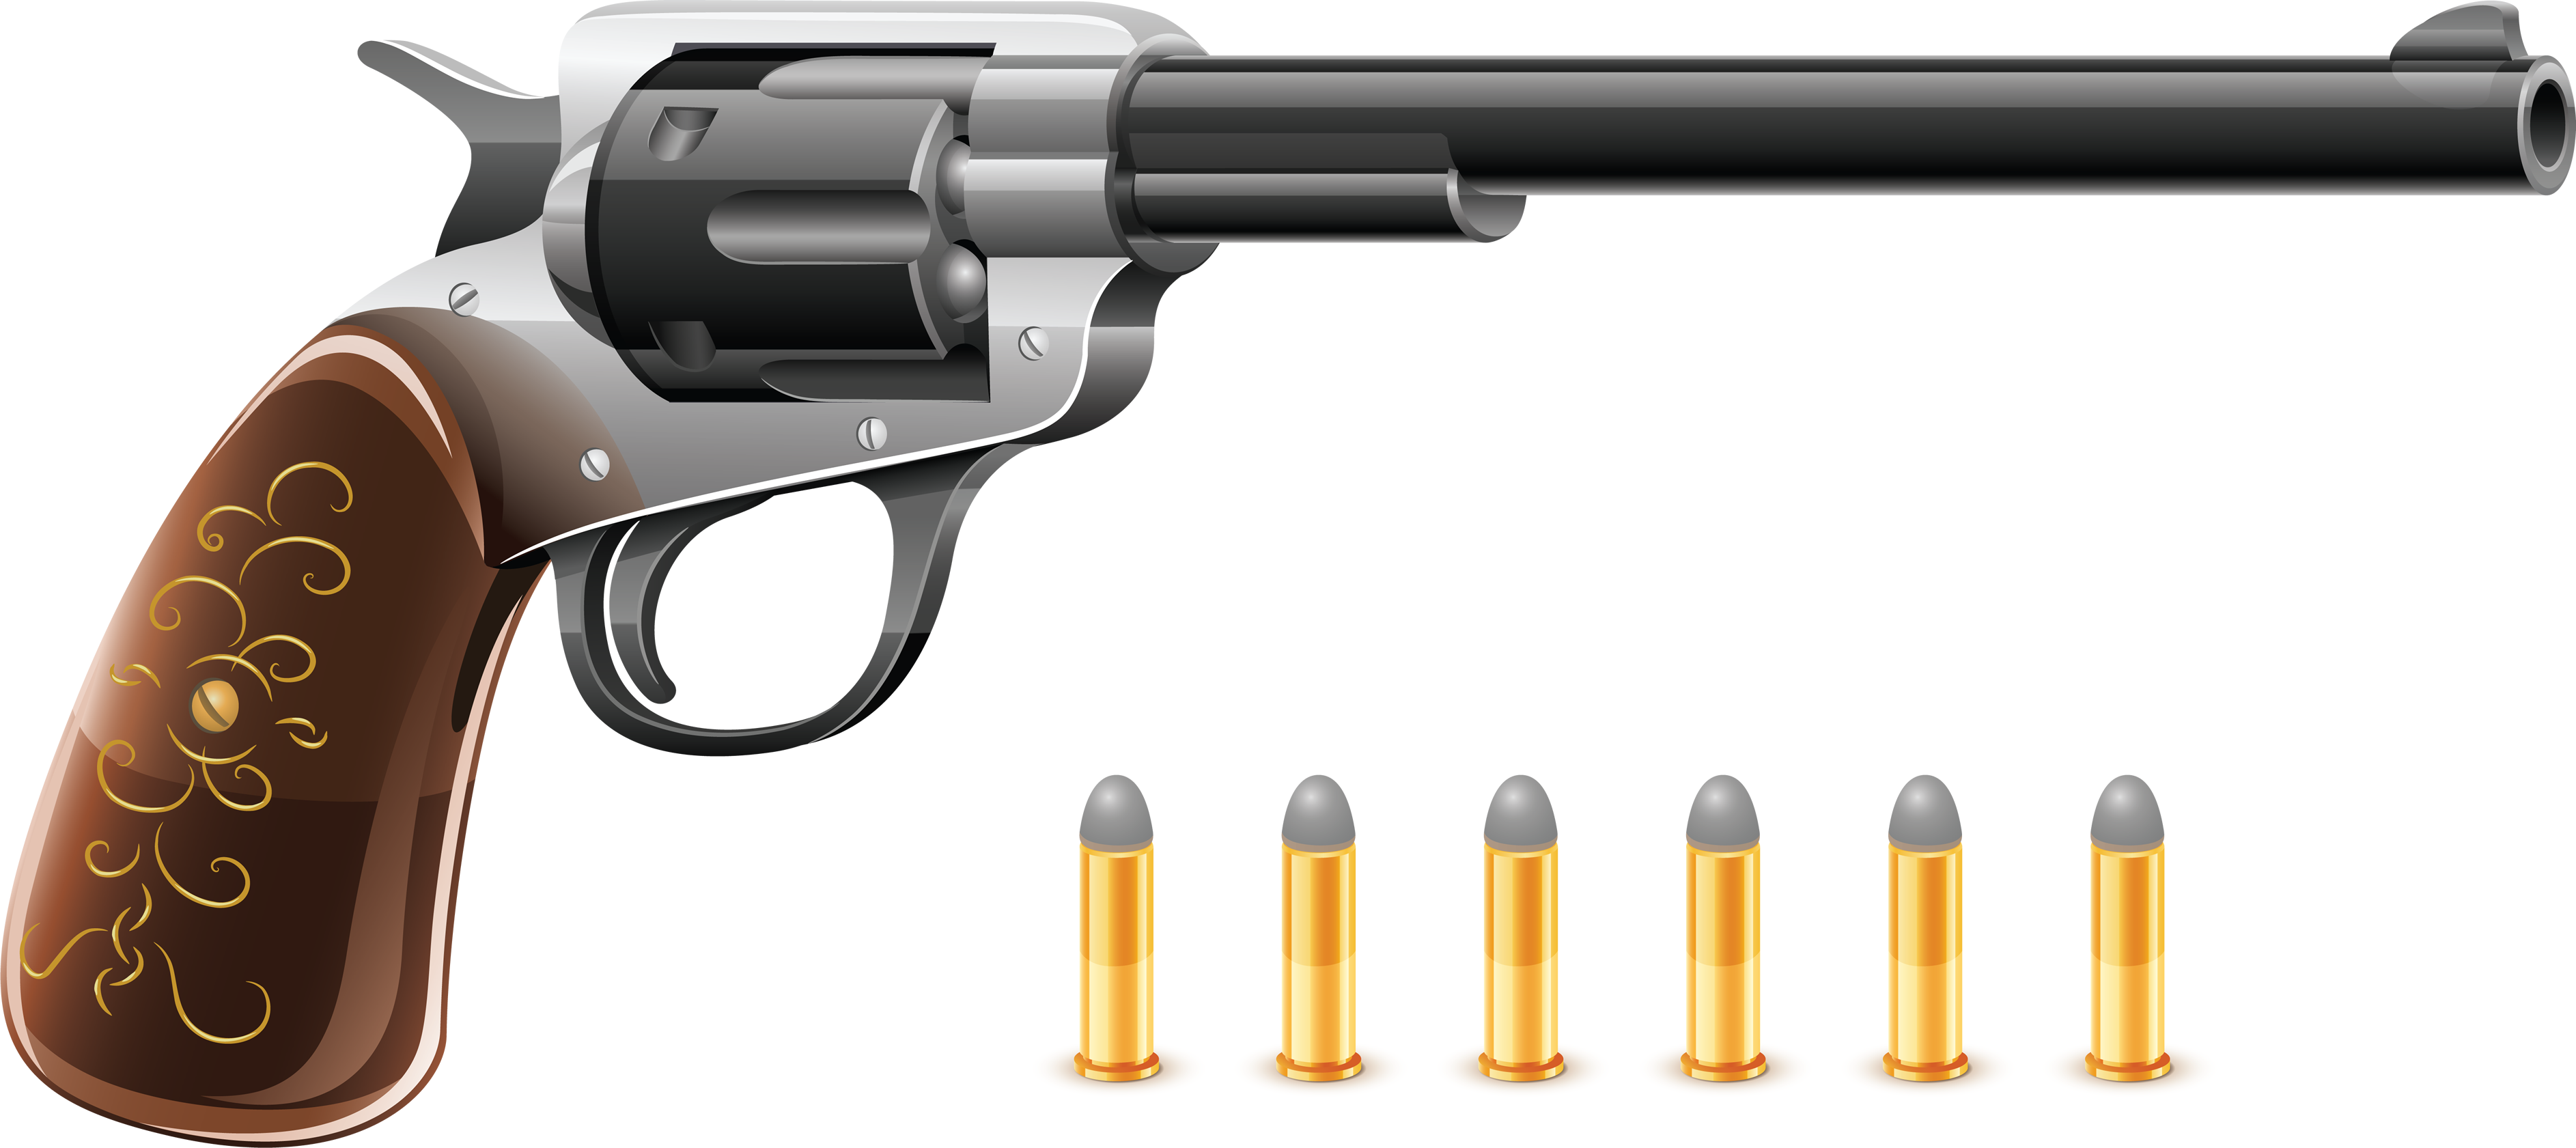 Revolver Colt Handgun Png Image - Gun Colt Png - HD Wallpaper 